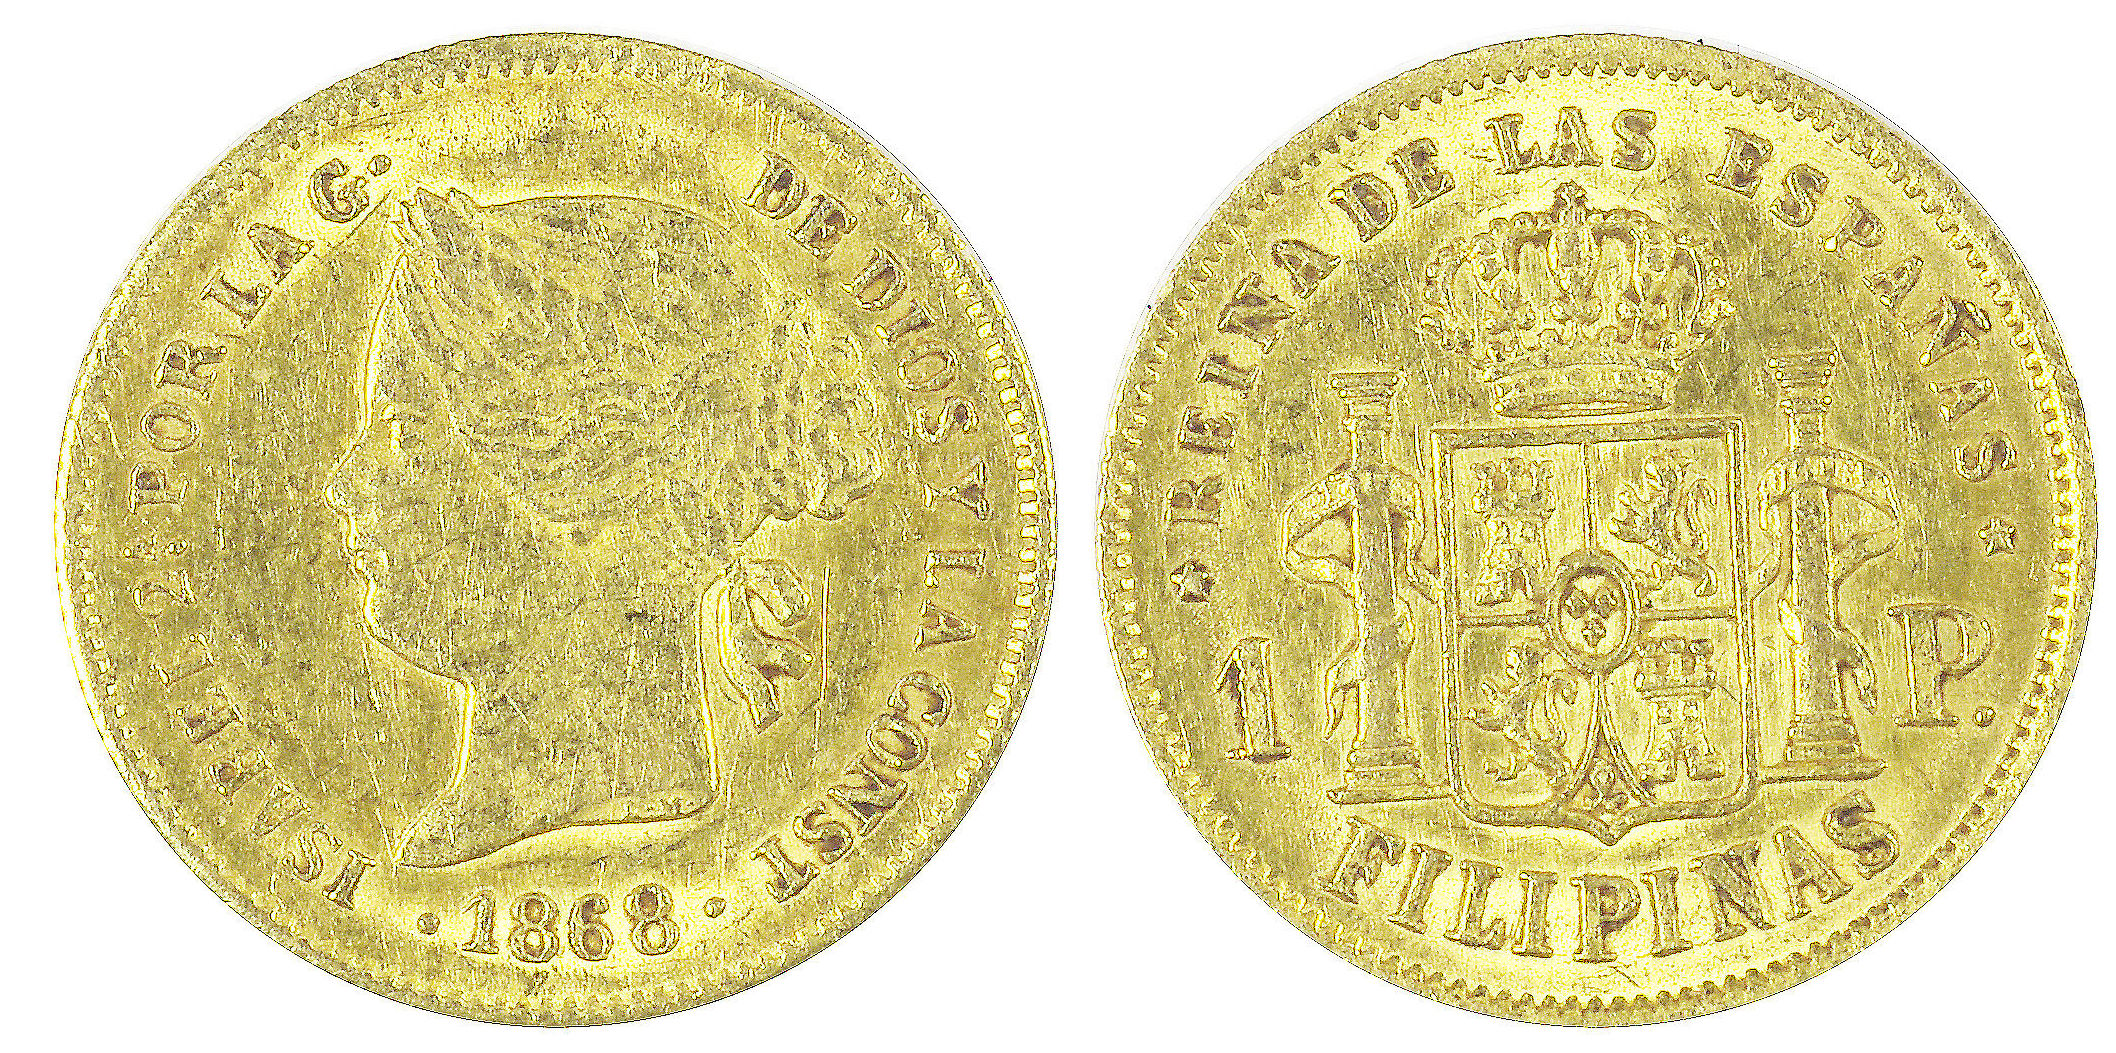 1 PESO iSABEL 2ª. 1868. FILIPINAS